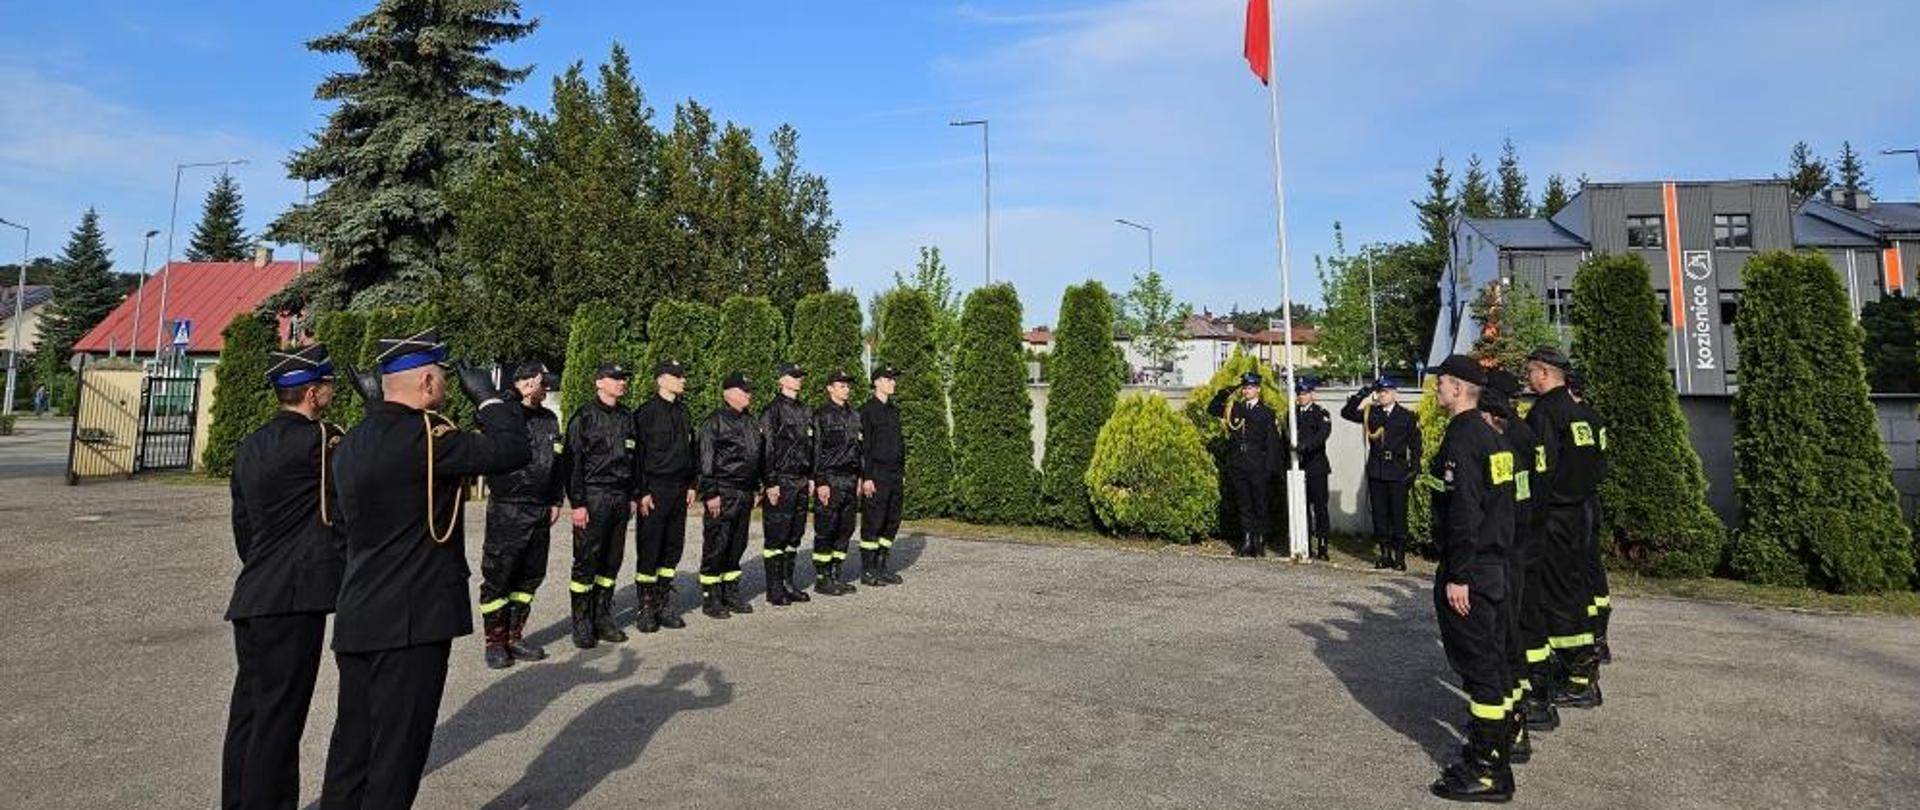 strażacy ze zmian służbowych z dowódcą JRG i komendantem stoją na pacu przy maszcie flagowym podczas uroczystego podniesienia flagi